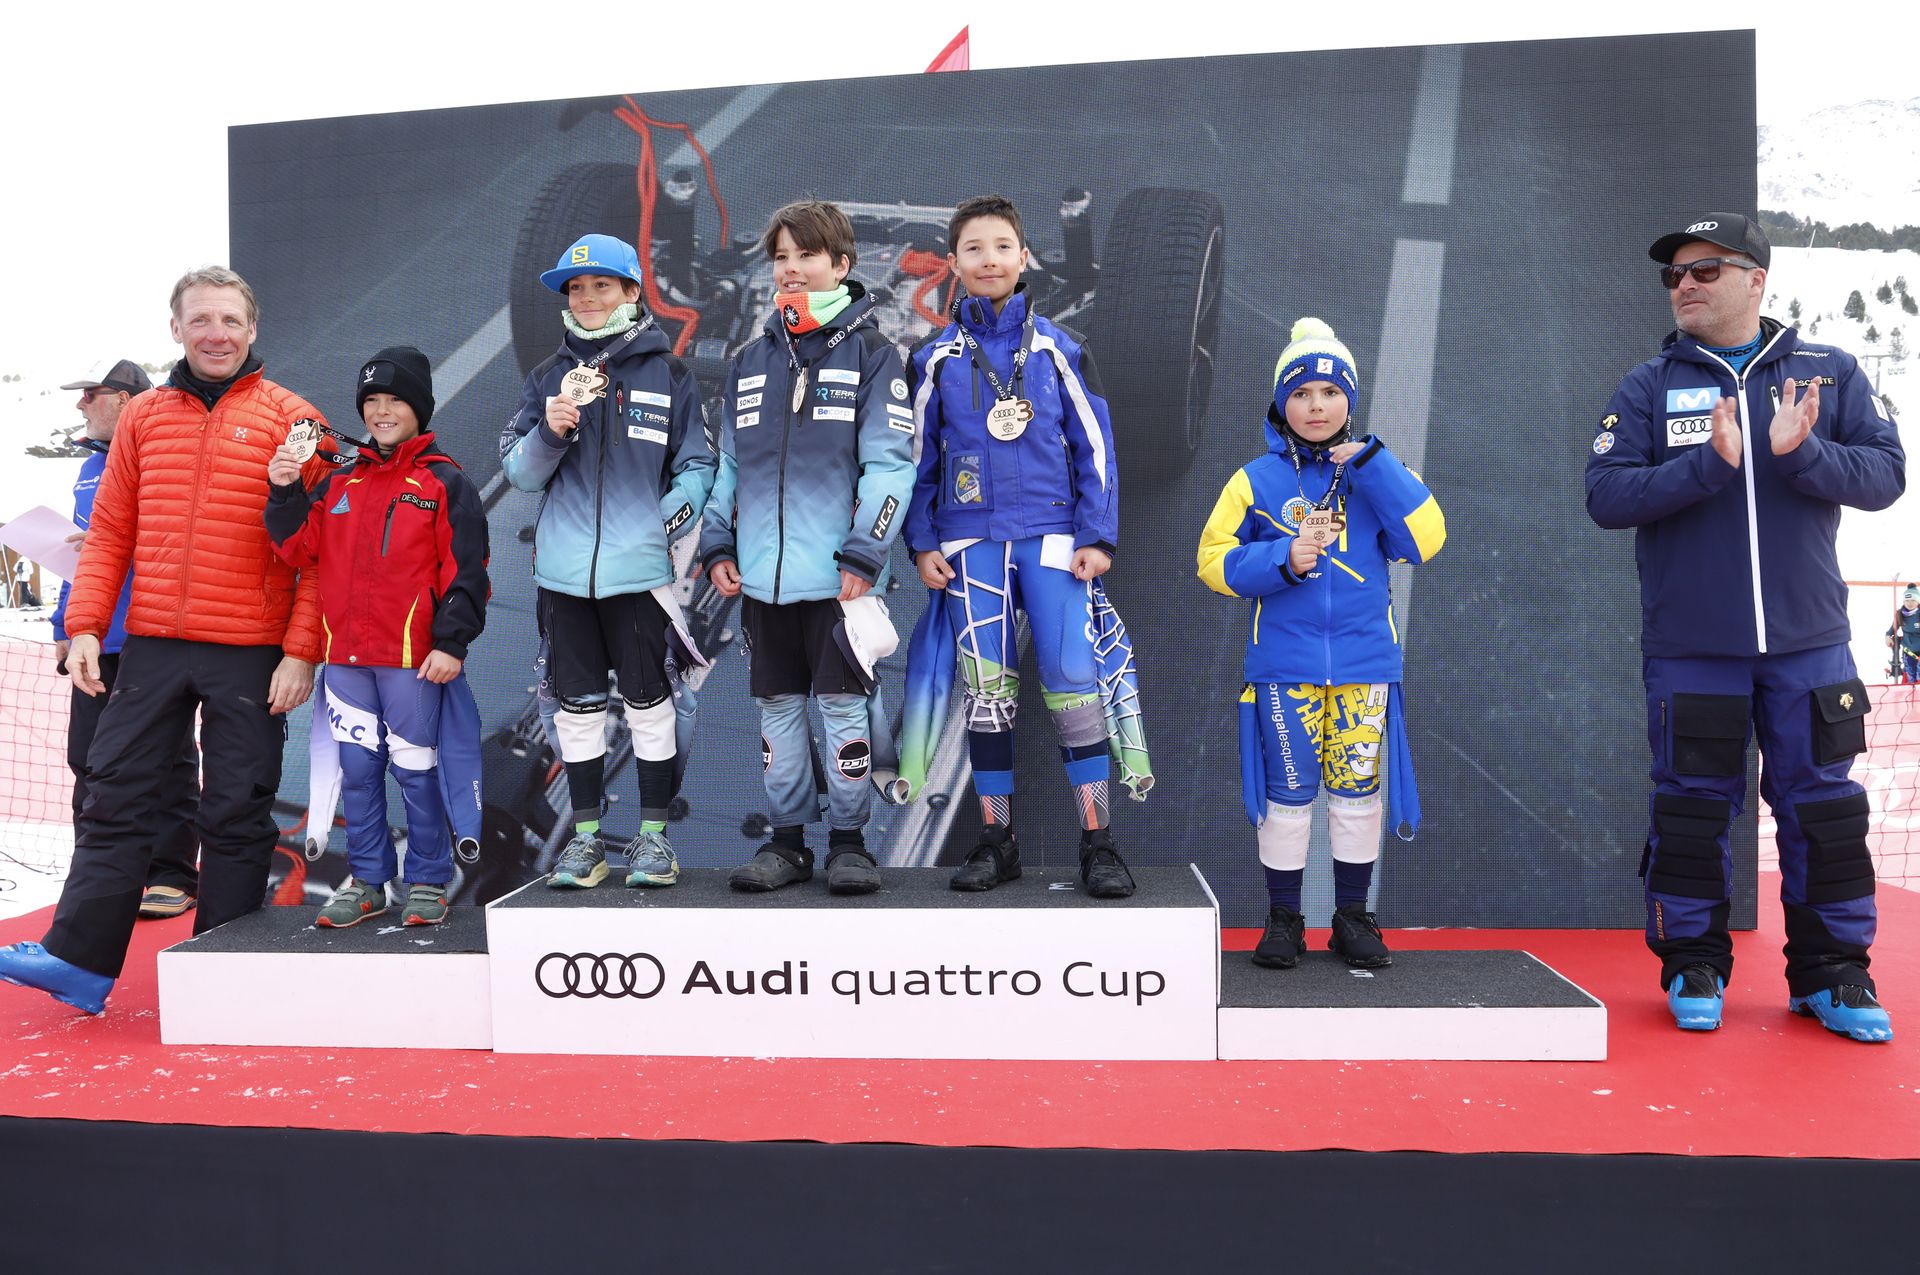 Podios del Trofeco Amics de Montgarri Audi Quattro Cup 2022